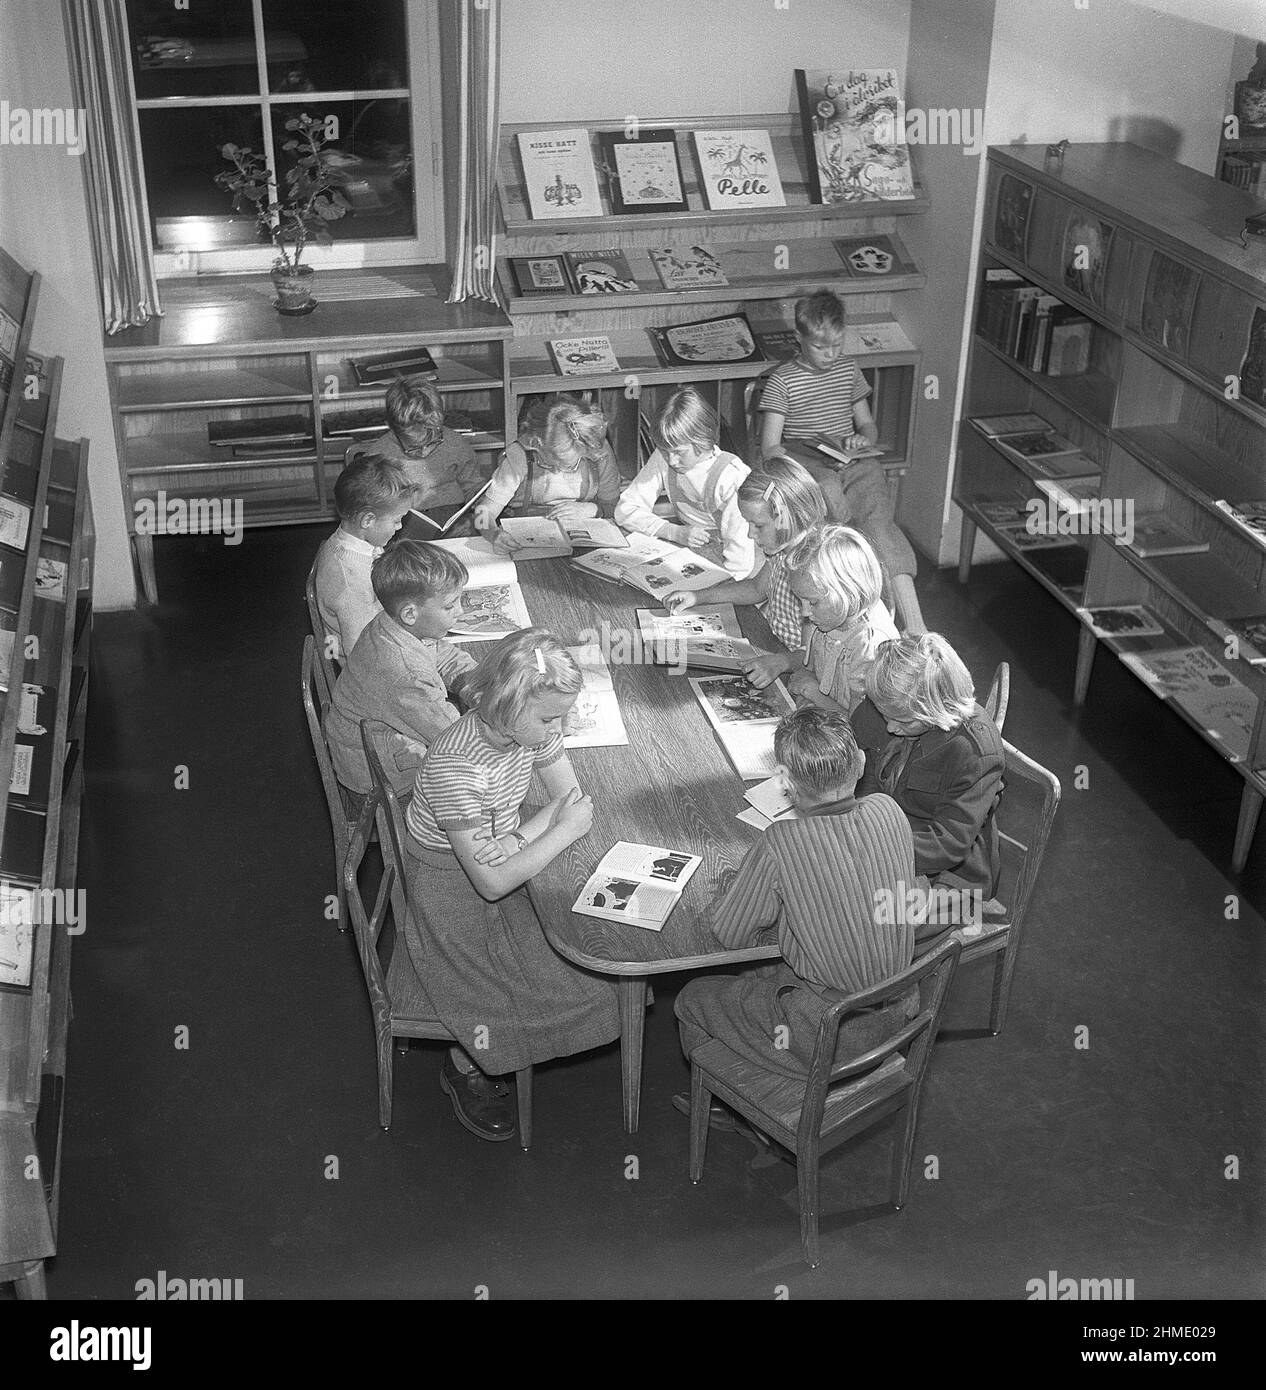 Niños de los 1950s. Interior de una biblioteca pública y una sala con estanterías en las paredes. Un grupo de niños está sentado en una mesa, todos leyendo un libro cada uno. SUECIA 1951 Kristoffersson ref BE25-12 Foto de stock